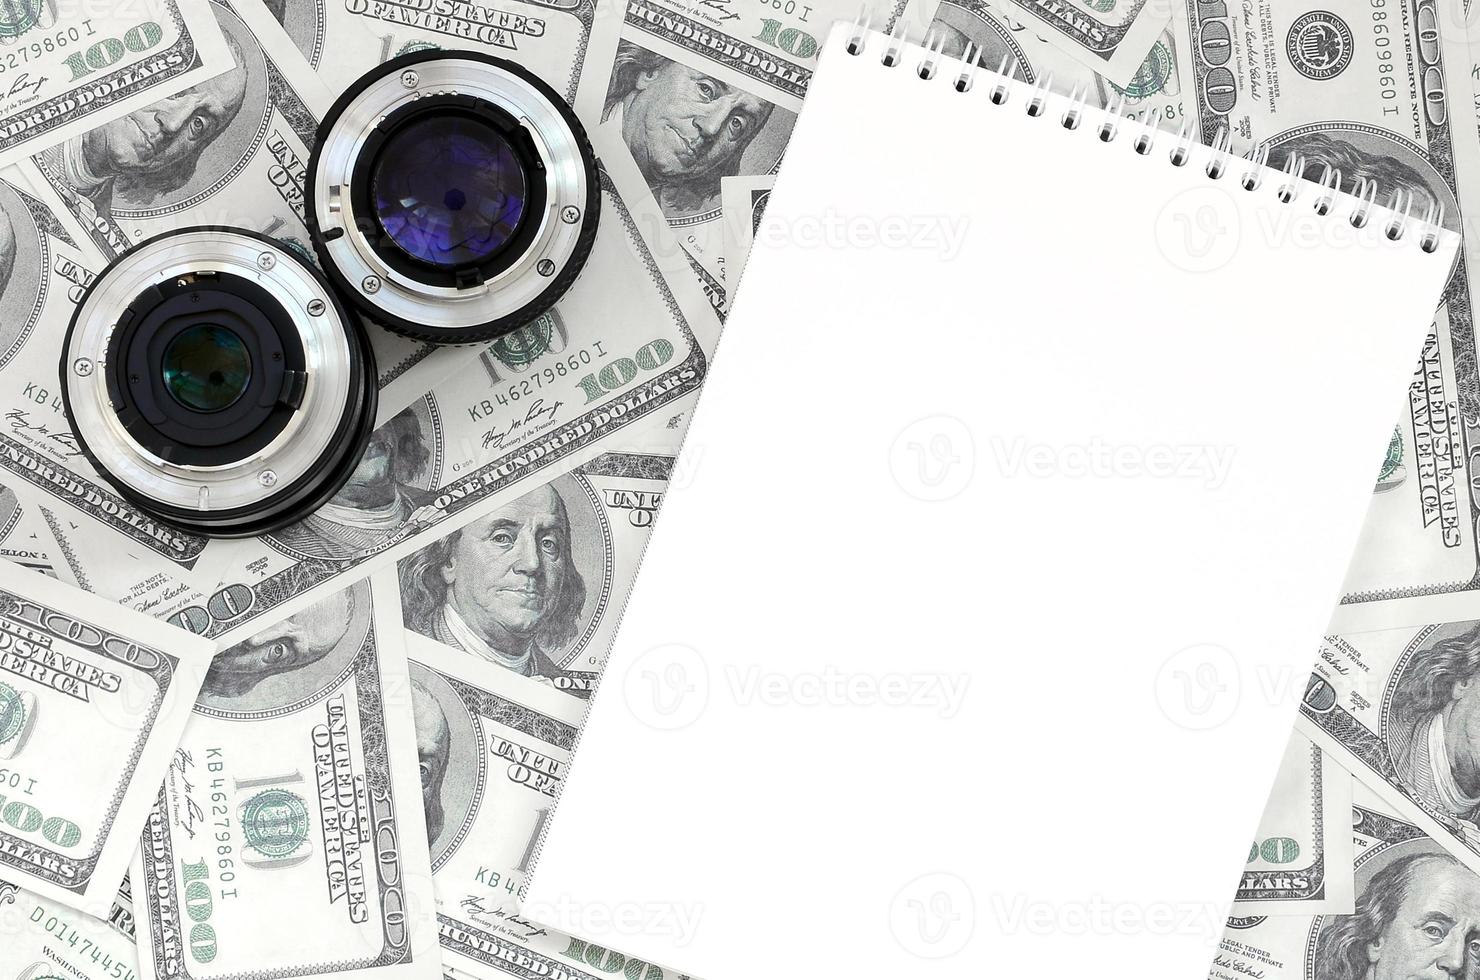 twee fotografisch lenzen en wit notitieboekje liggen Aan de achtergrond van een veel van dollar rekeningen. ruimte voor tekst foto